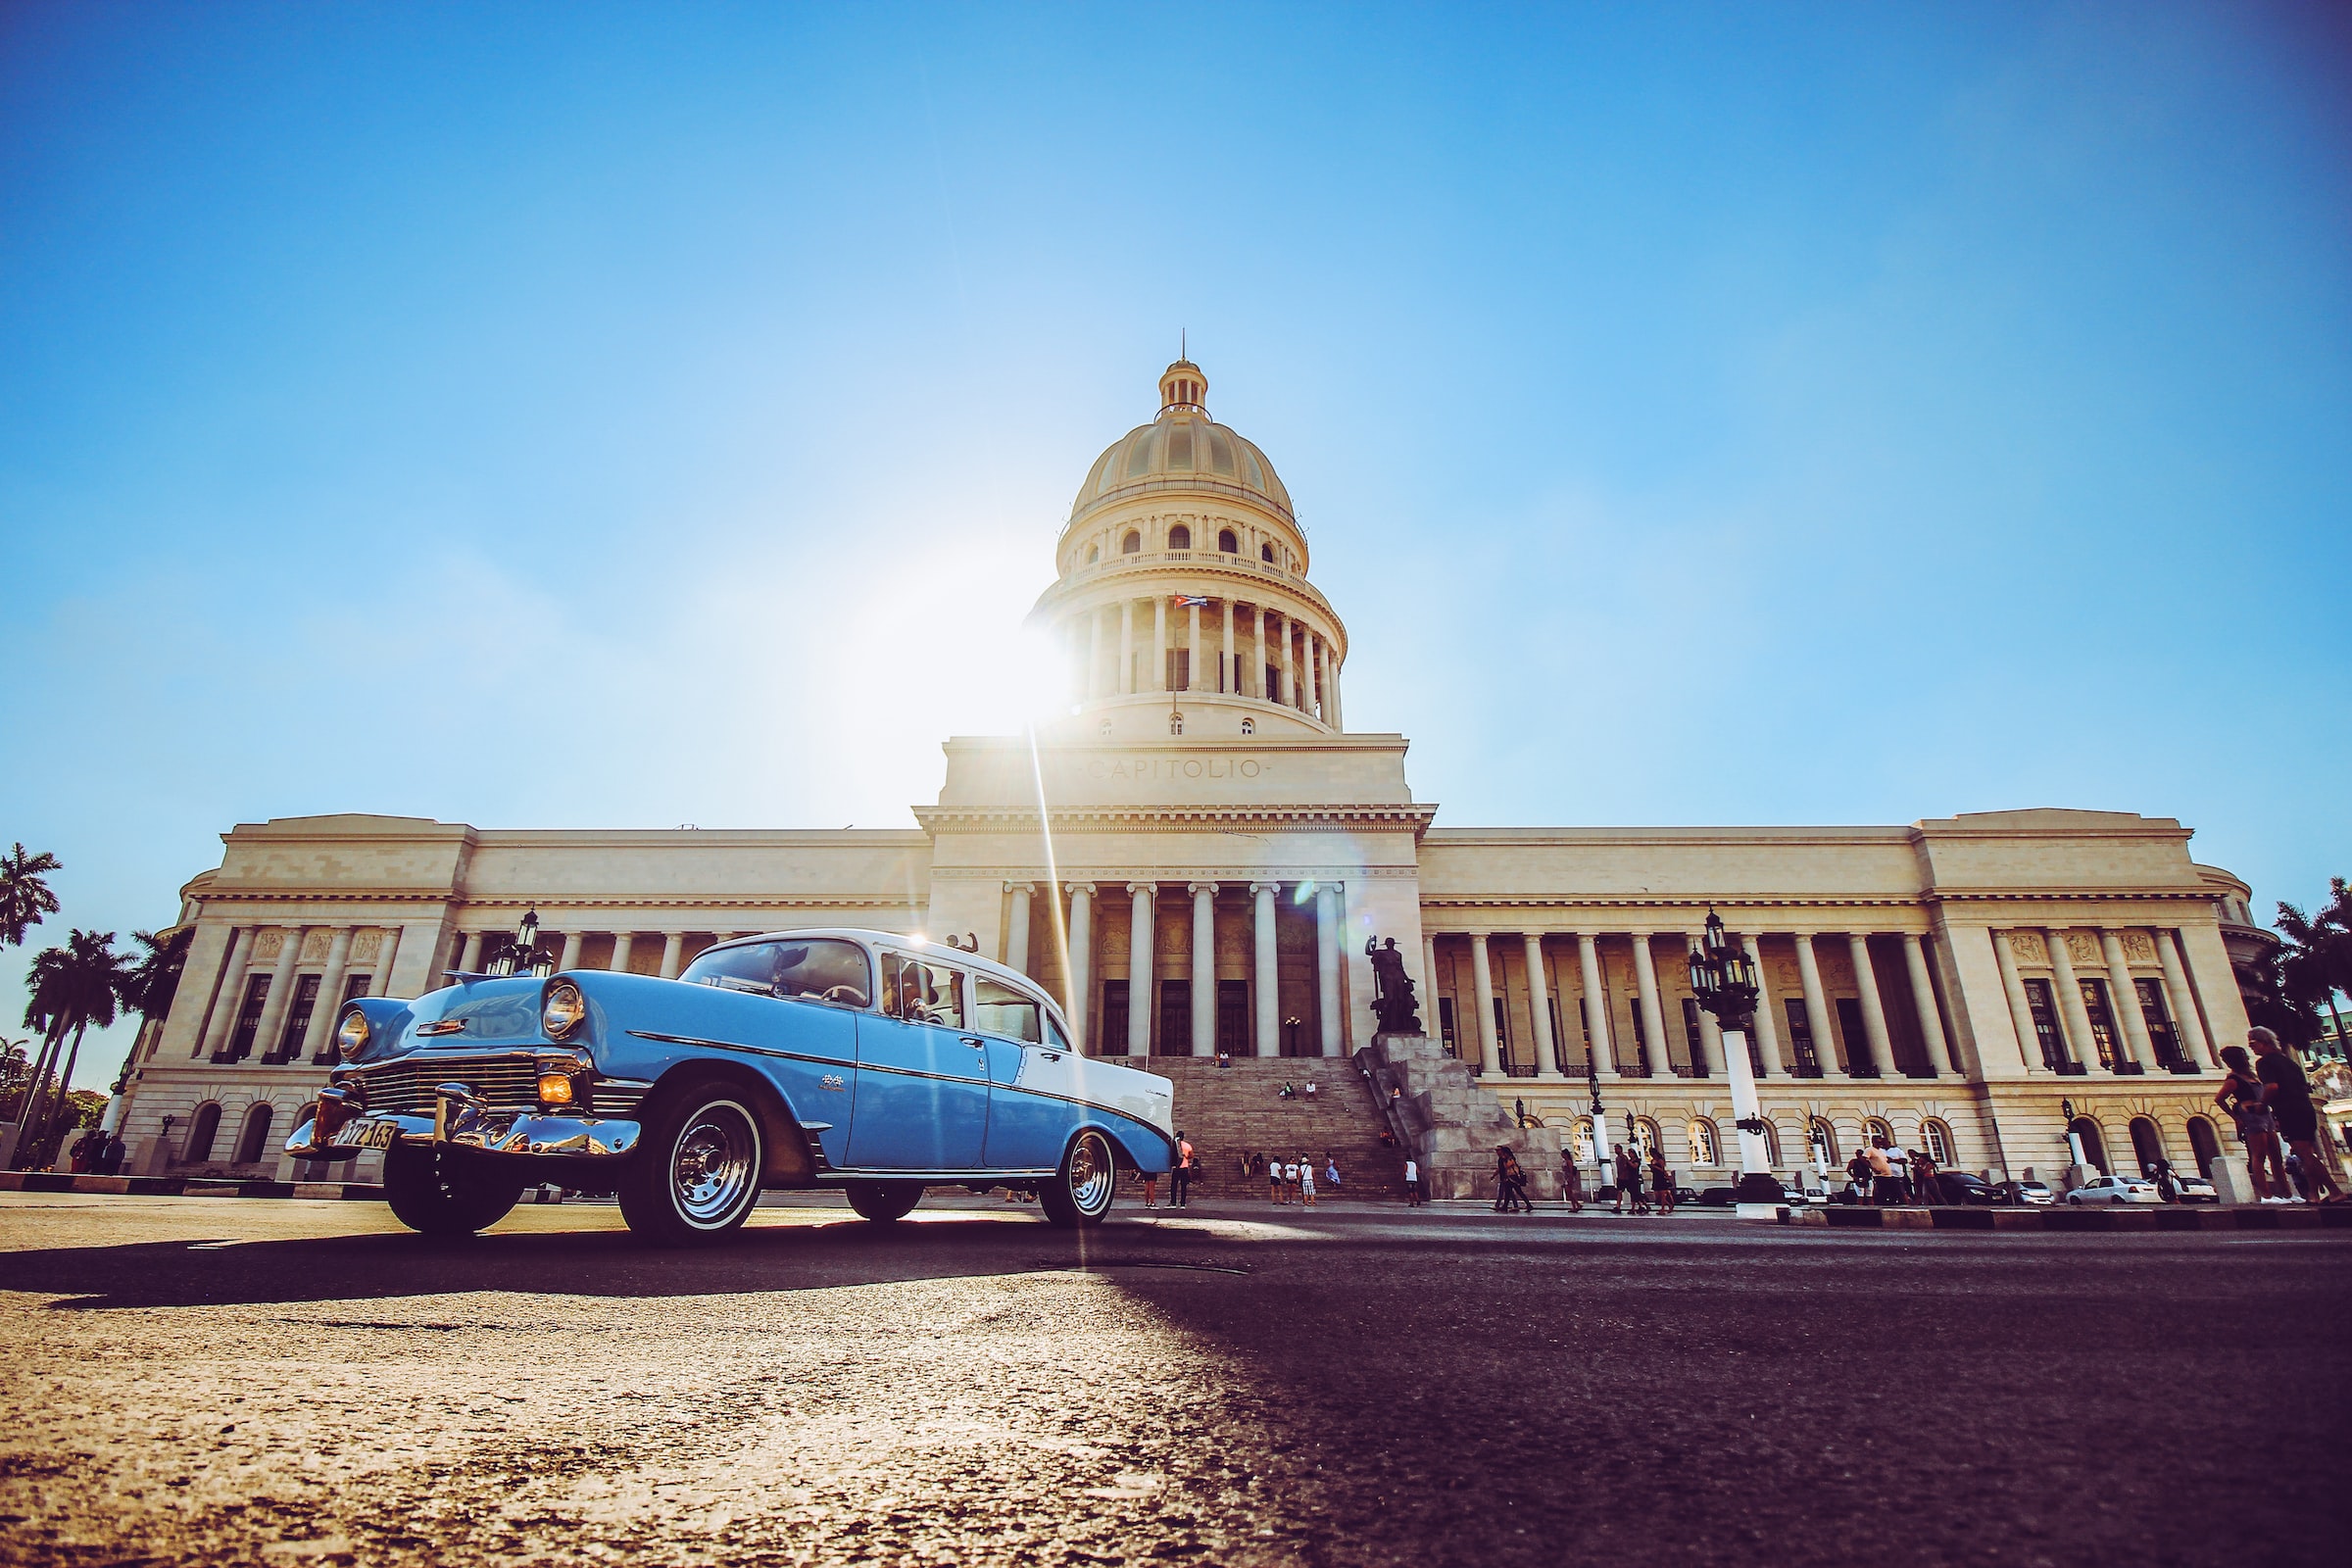 Cuba car and landmark